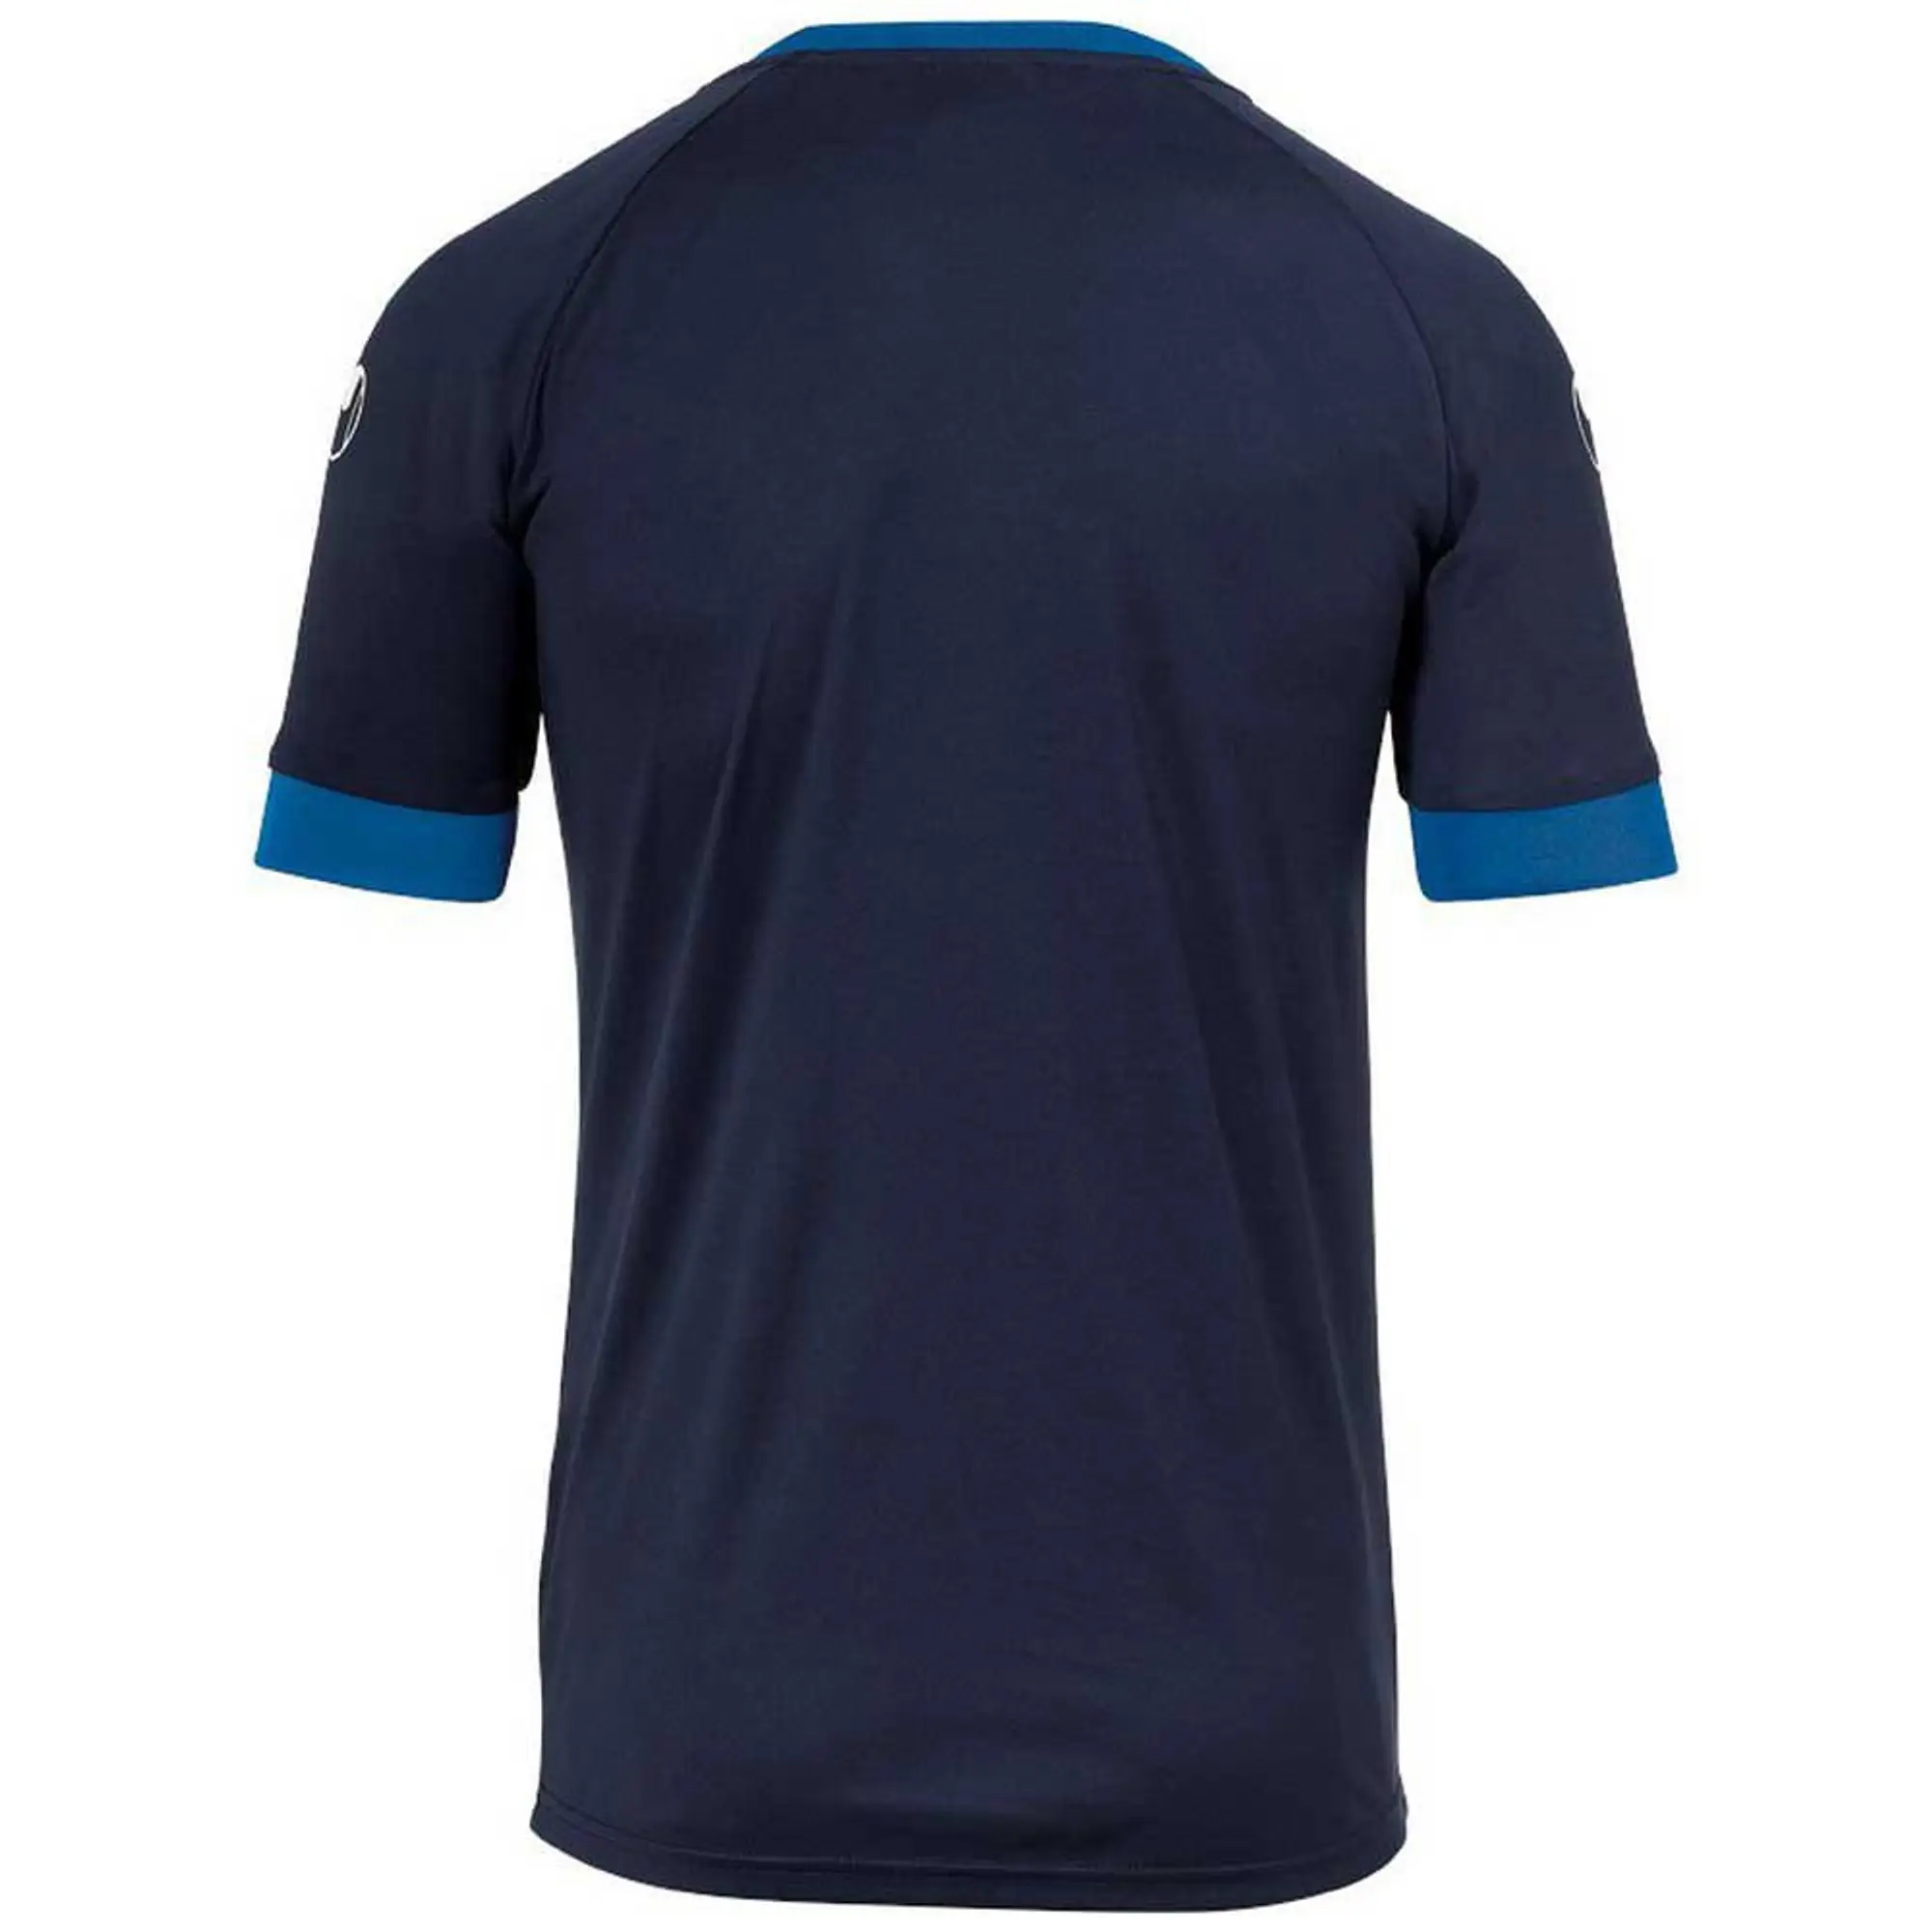 Uhlsport Division Ii Short Sleeve T-shirt  - Blue